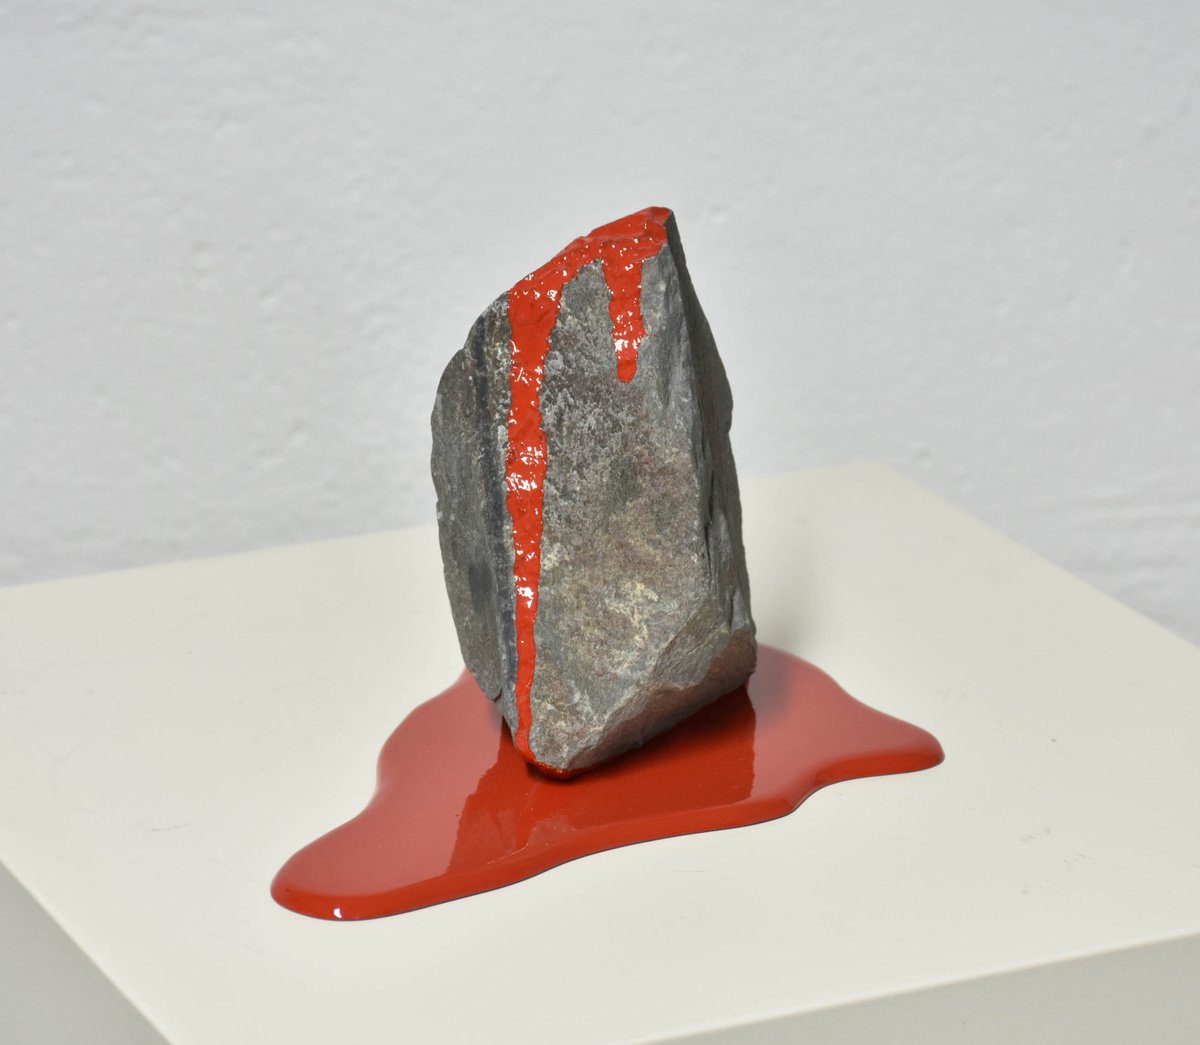 La roche active by Yannick Bouillault